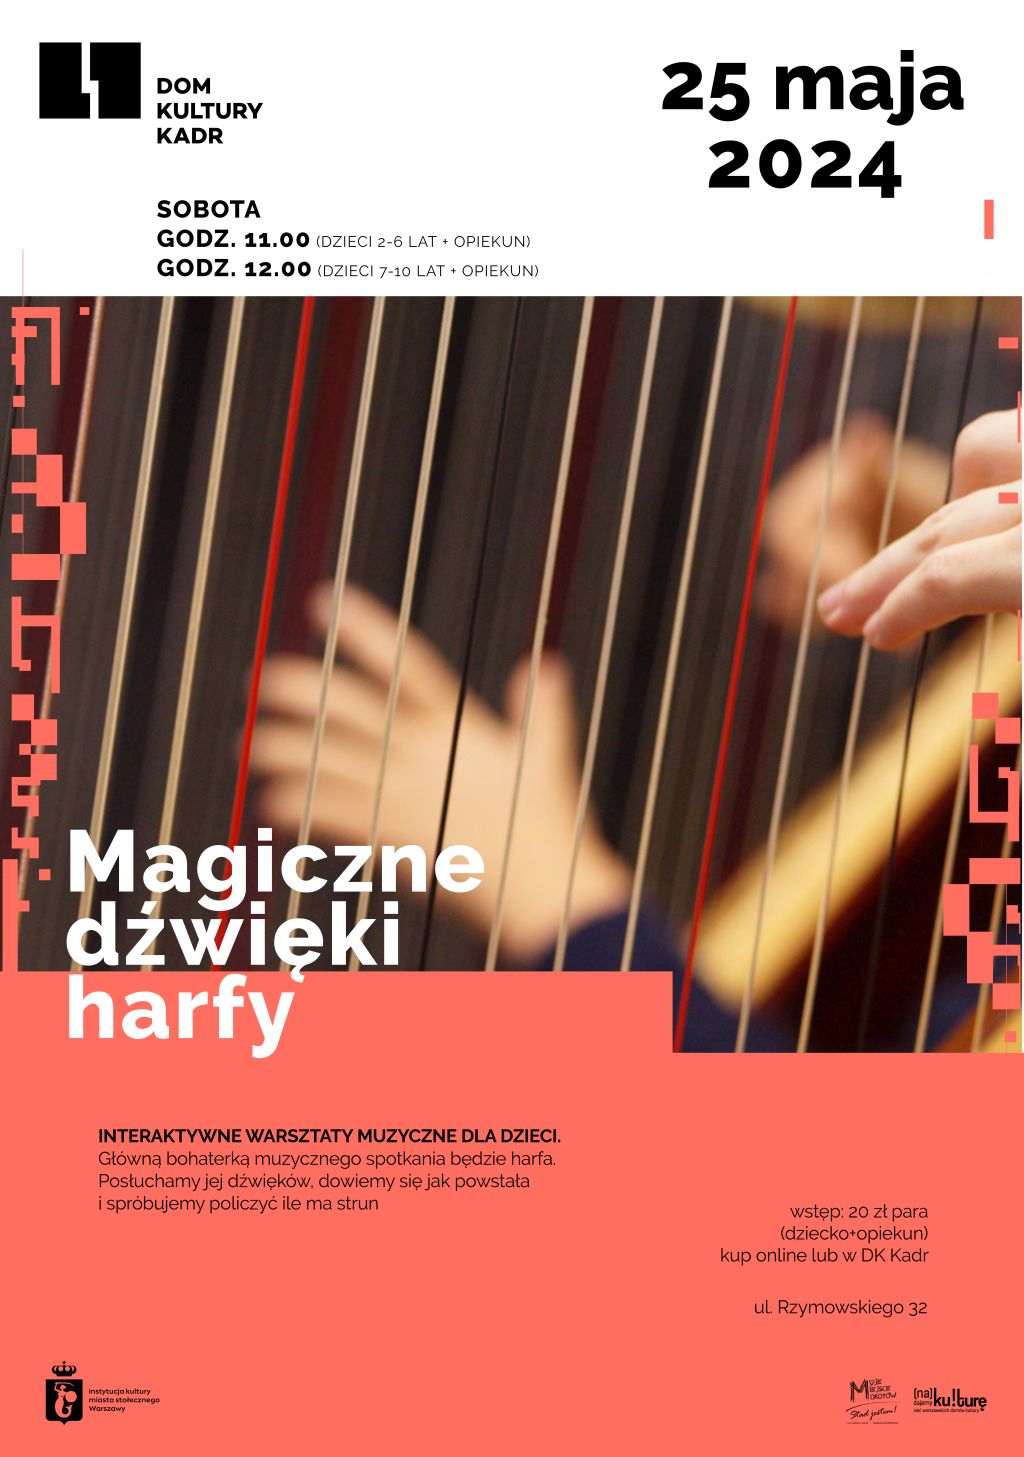 Magiczne dźwięki harfy - warsztaty muzyczne dla dzieci (2-6 i 7-10 lat z opiekunem)